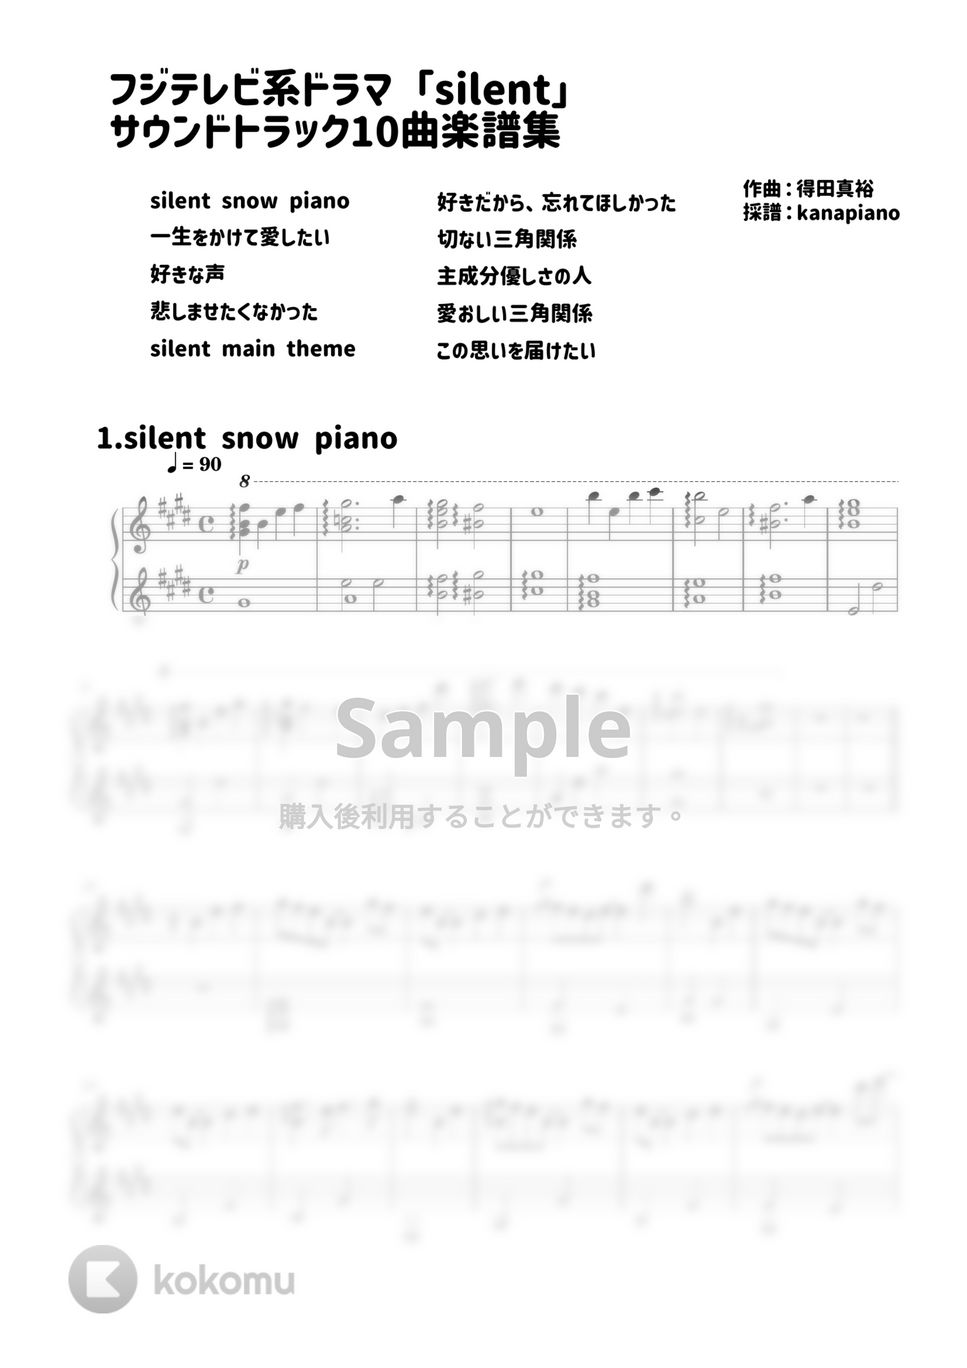 得田真裕 - ドラマ「silent」サウンドトラック10曲楽譜集 (silent/得田真裕) by kanapiano